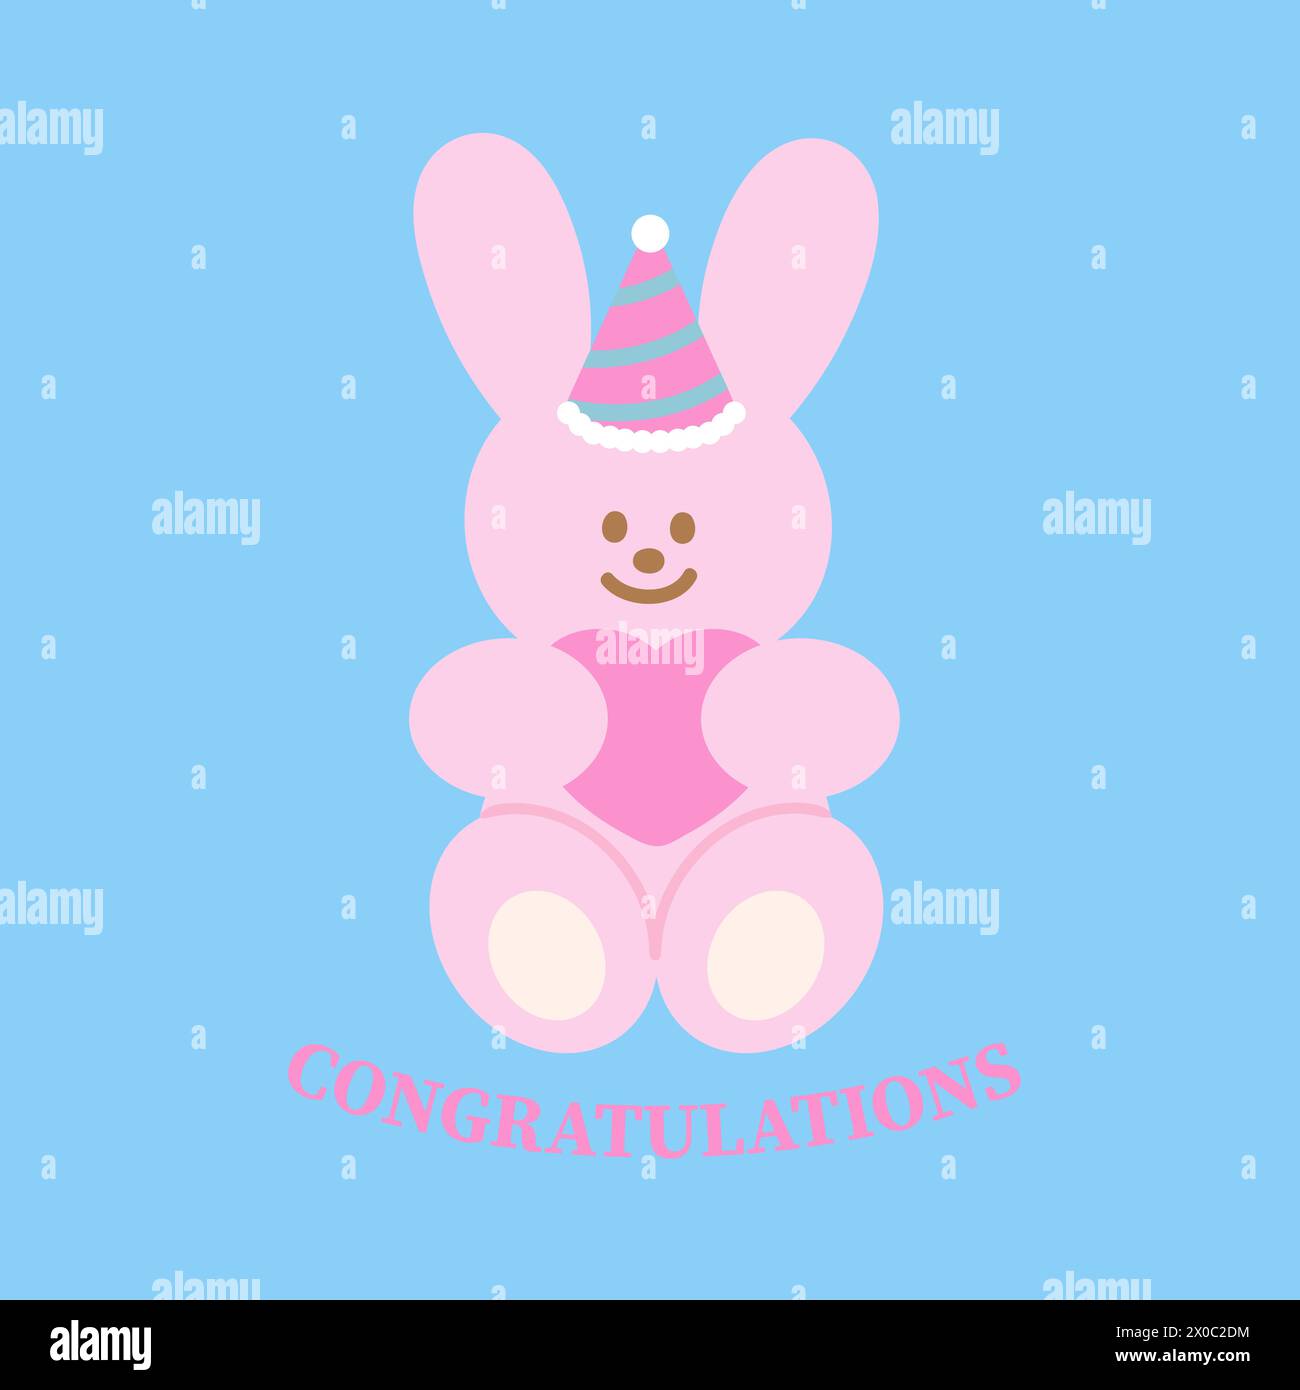 Illustrazione di coniglietto rosa, cappello da festa, cuore e lettere DI CONGRATULAZIONI su sfondo blu pastello per cartolina, stampa, carta da parati, cartone animato, pasqua Illustrazione Vettoriale